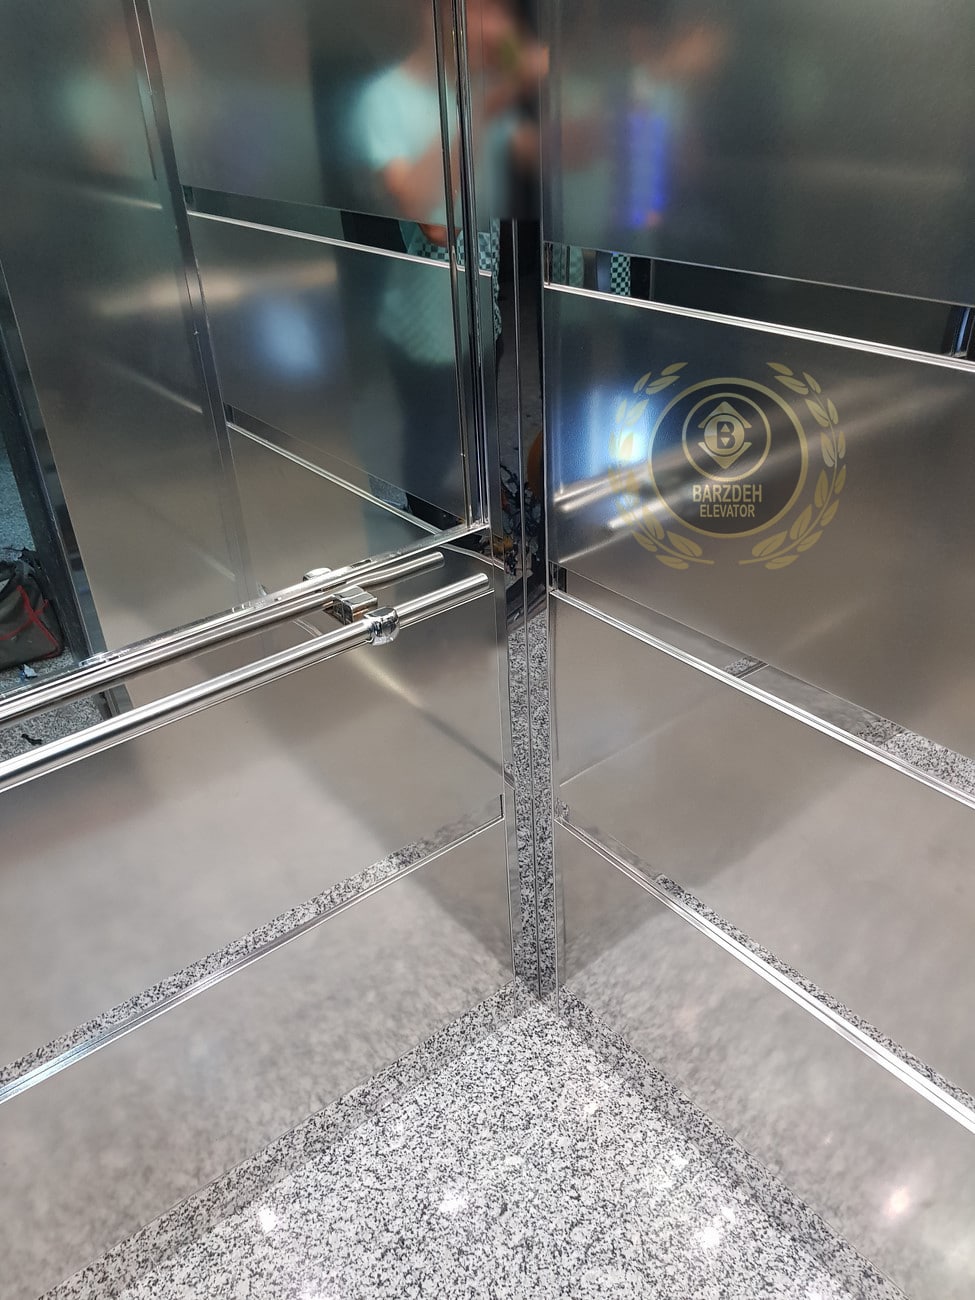 کابین آسانسور استیل قیمت خرید فروش